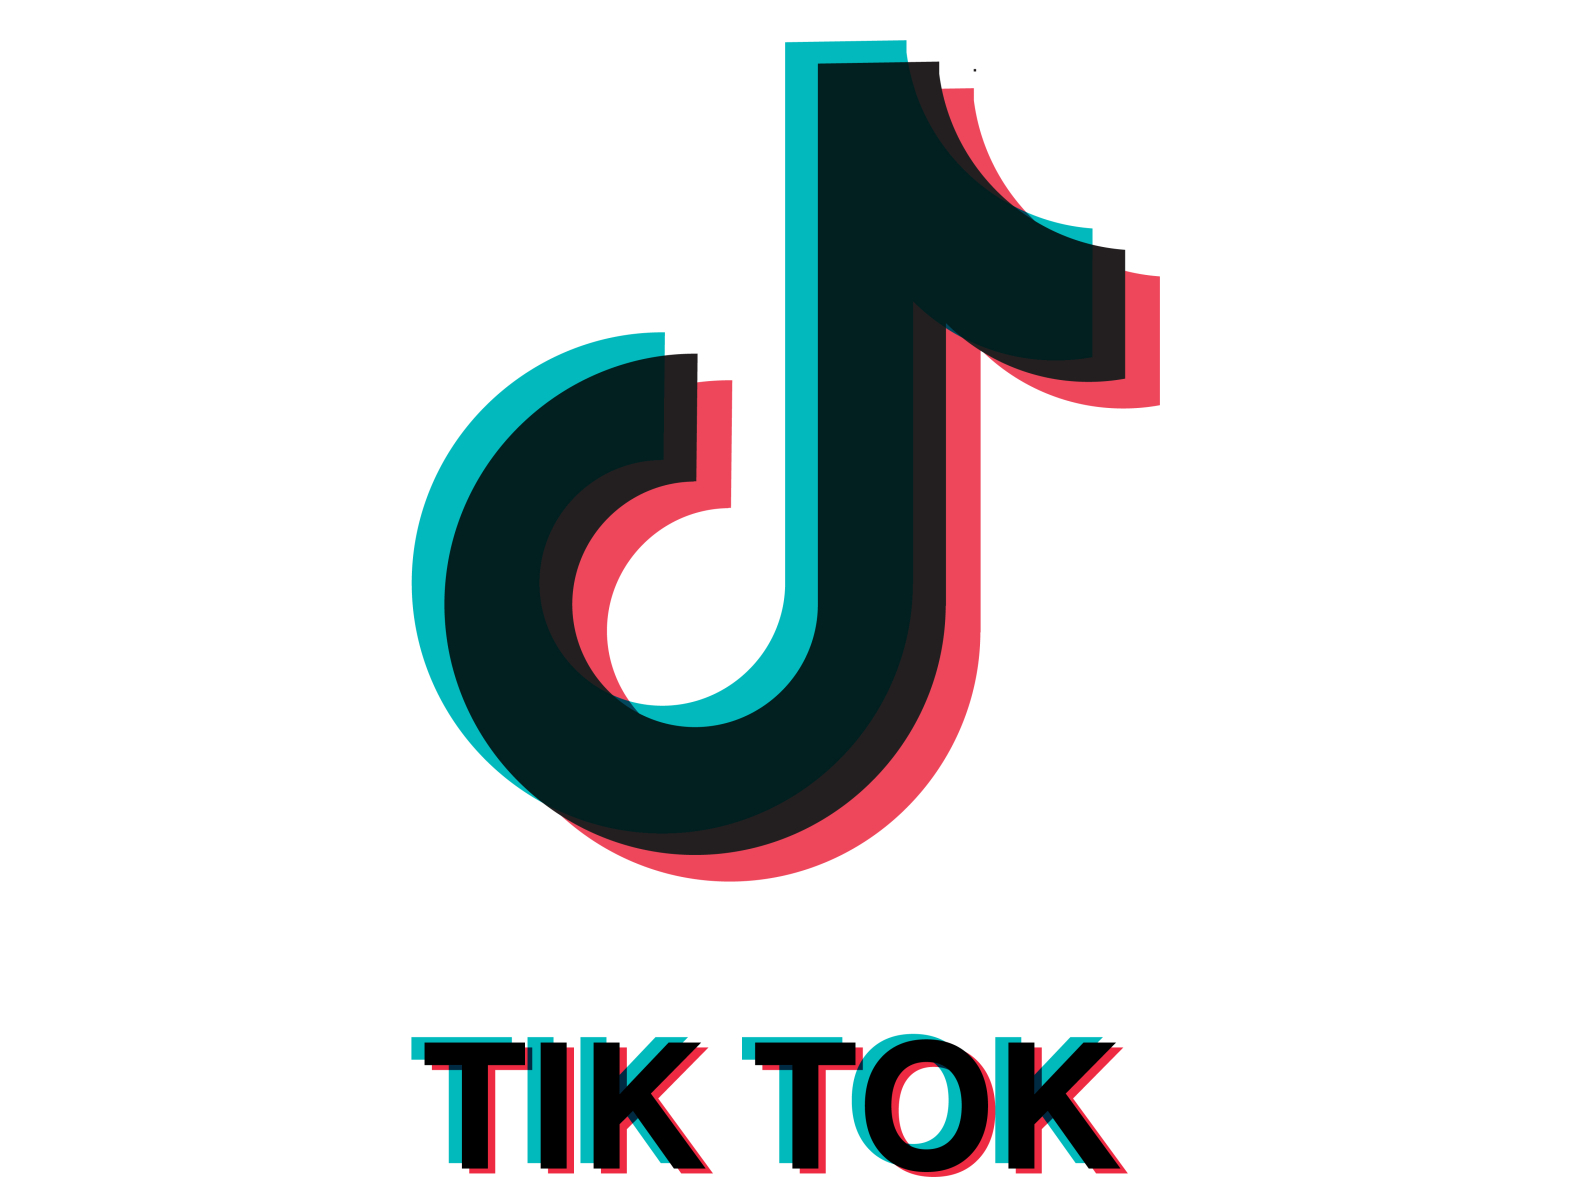 Tik tok logo anaglyphic effect. 